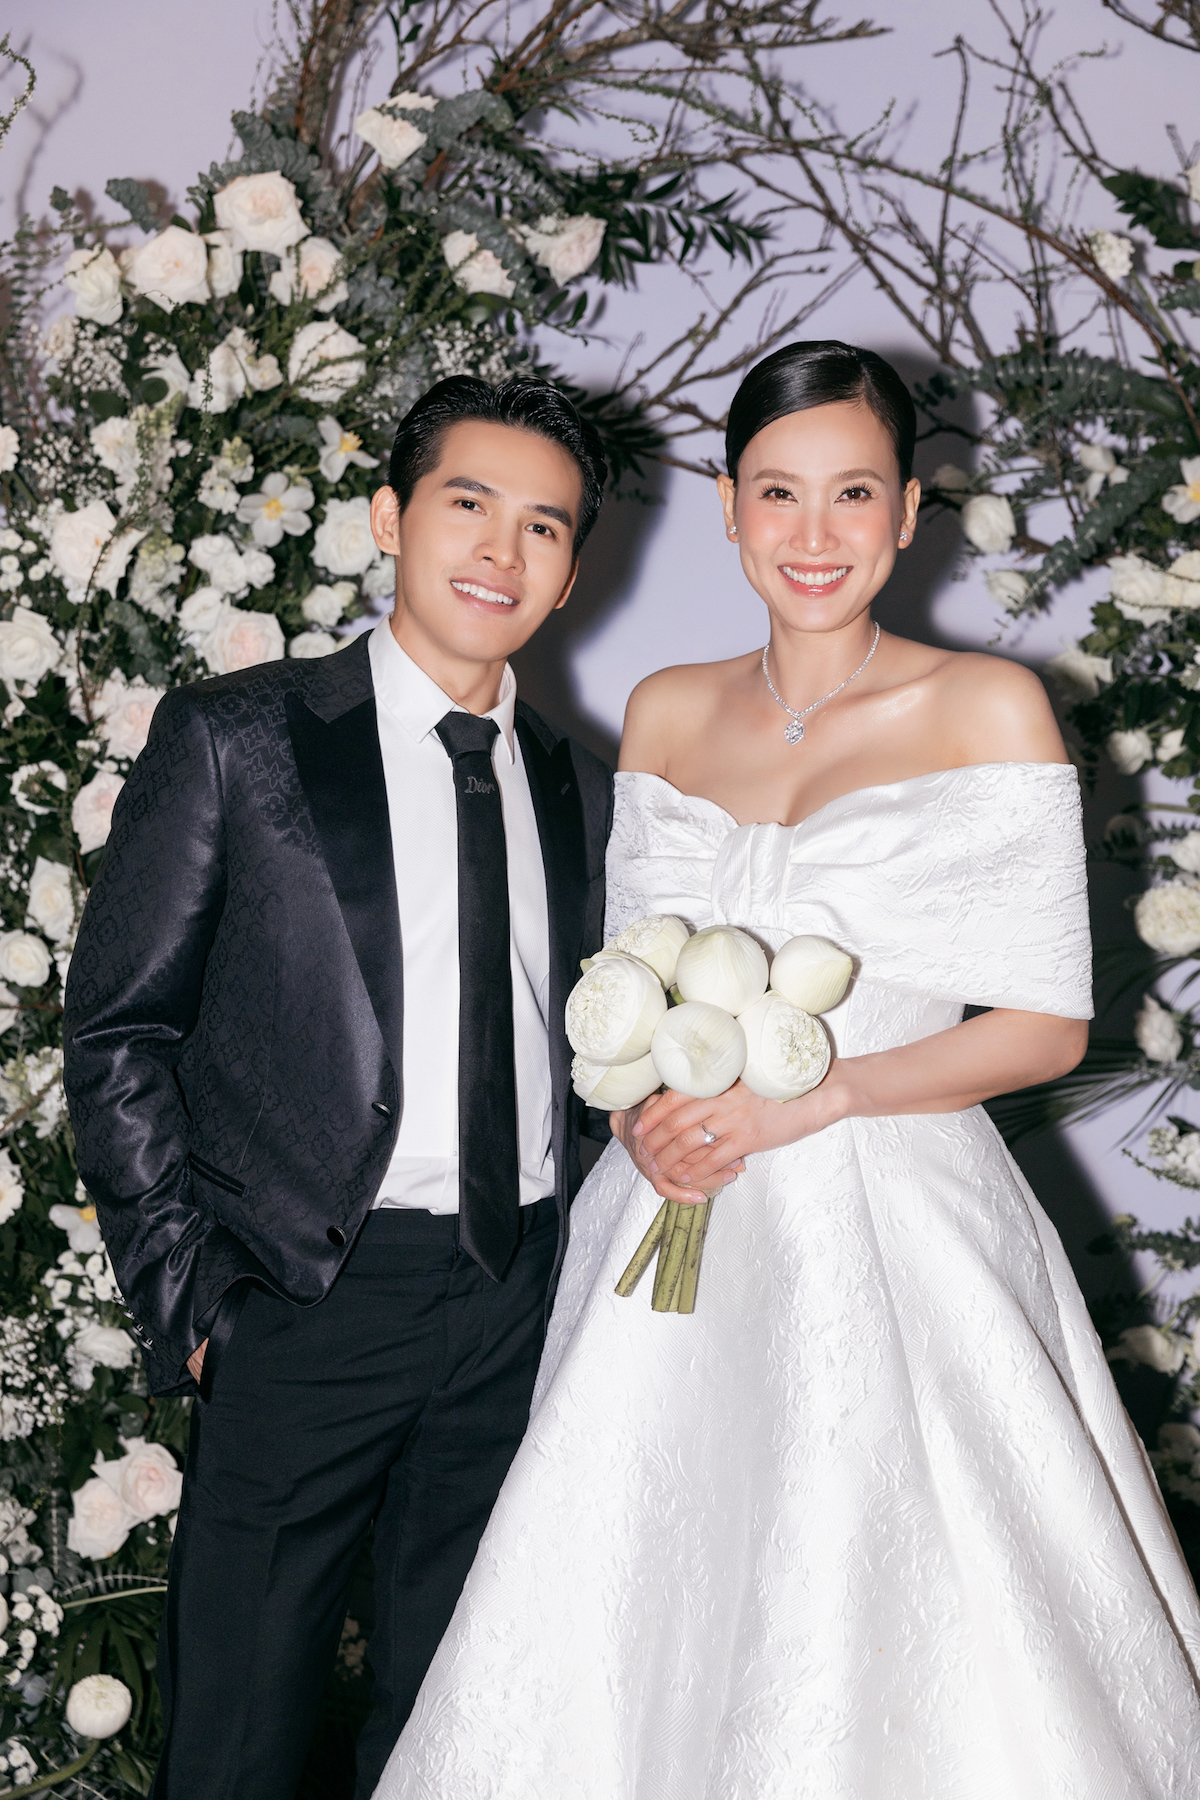 Dàn sao vui mừng dự tiệc cưới của Hoa hậu Dương Mỹ Linh - 9